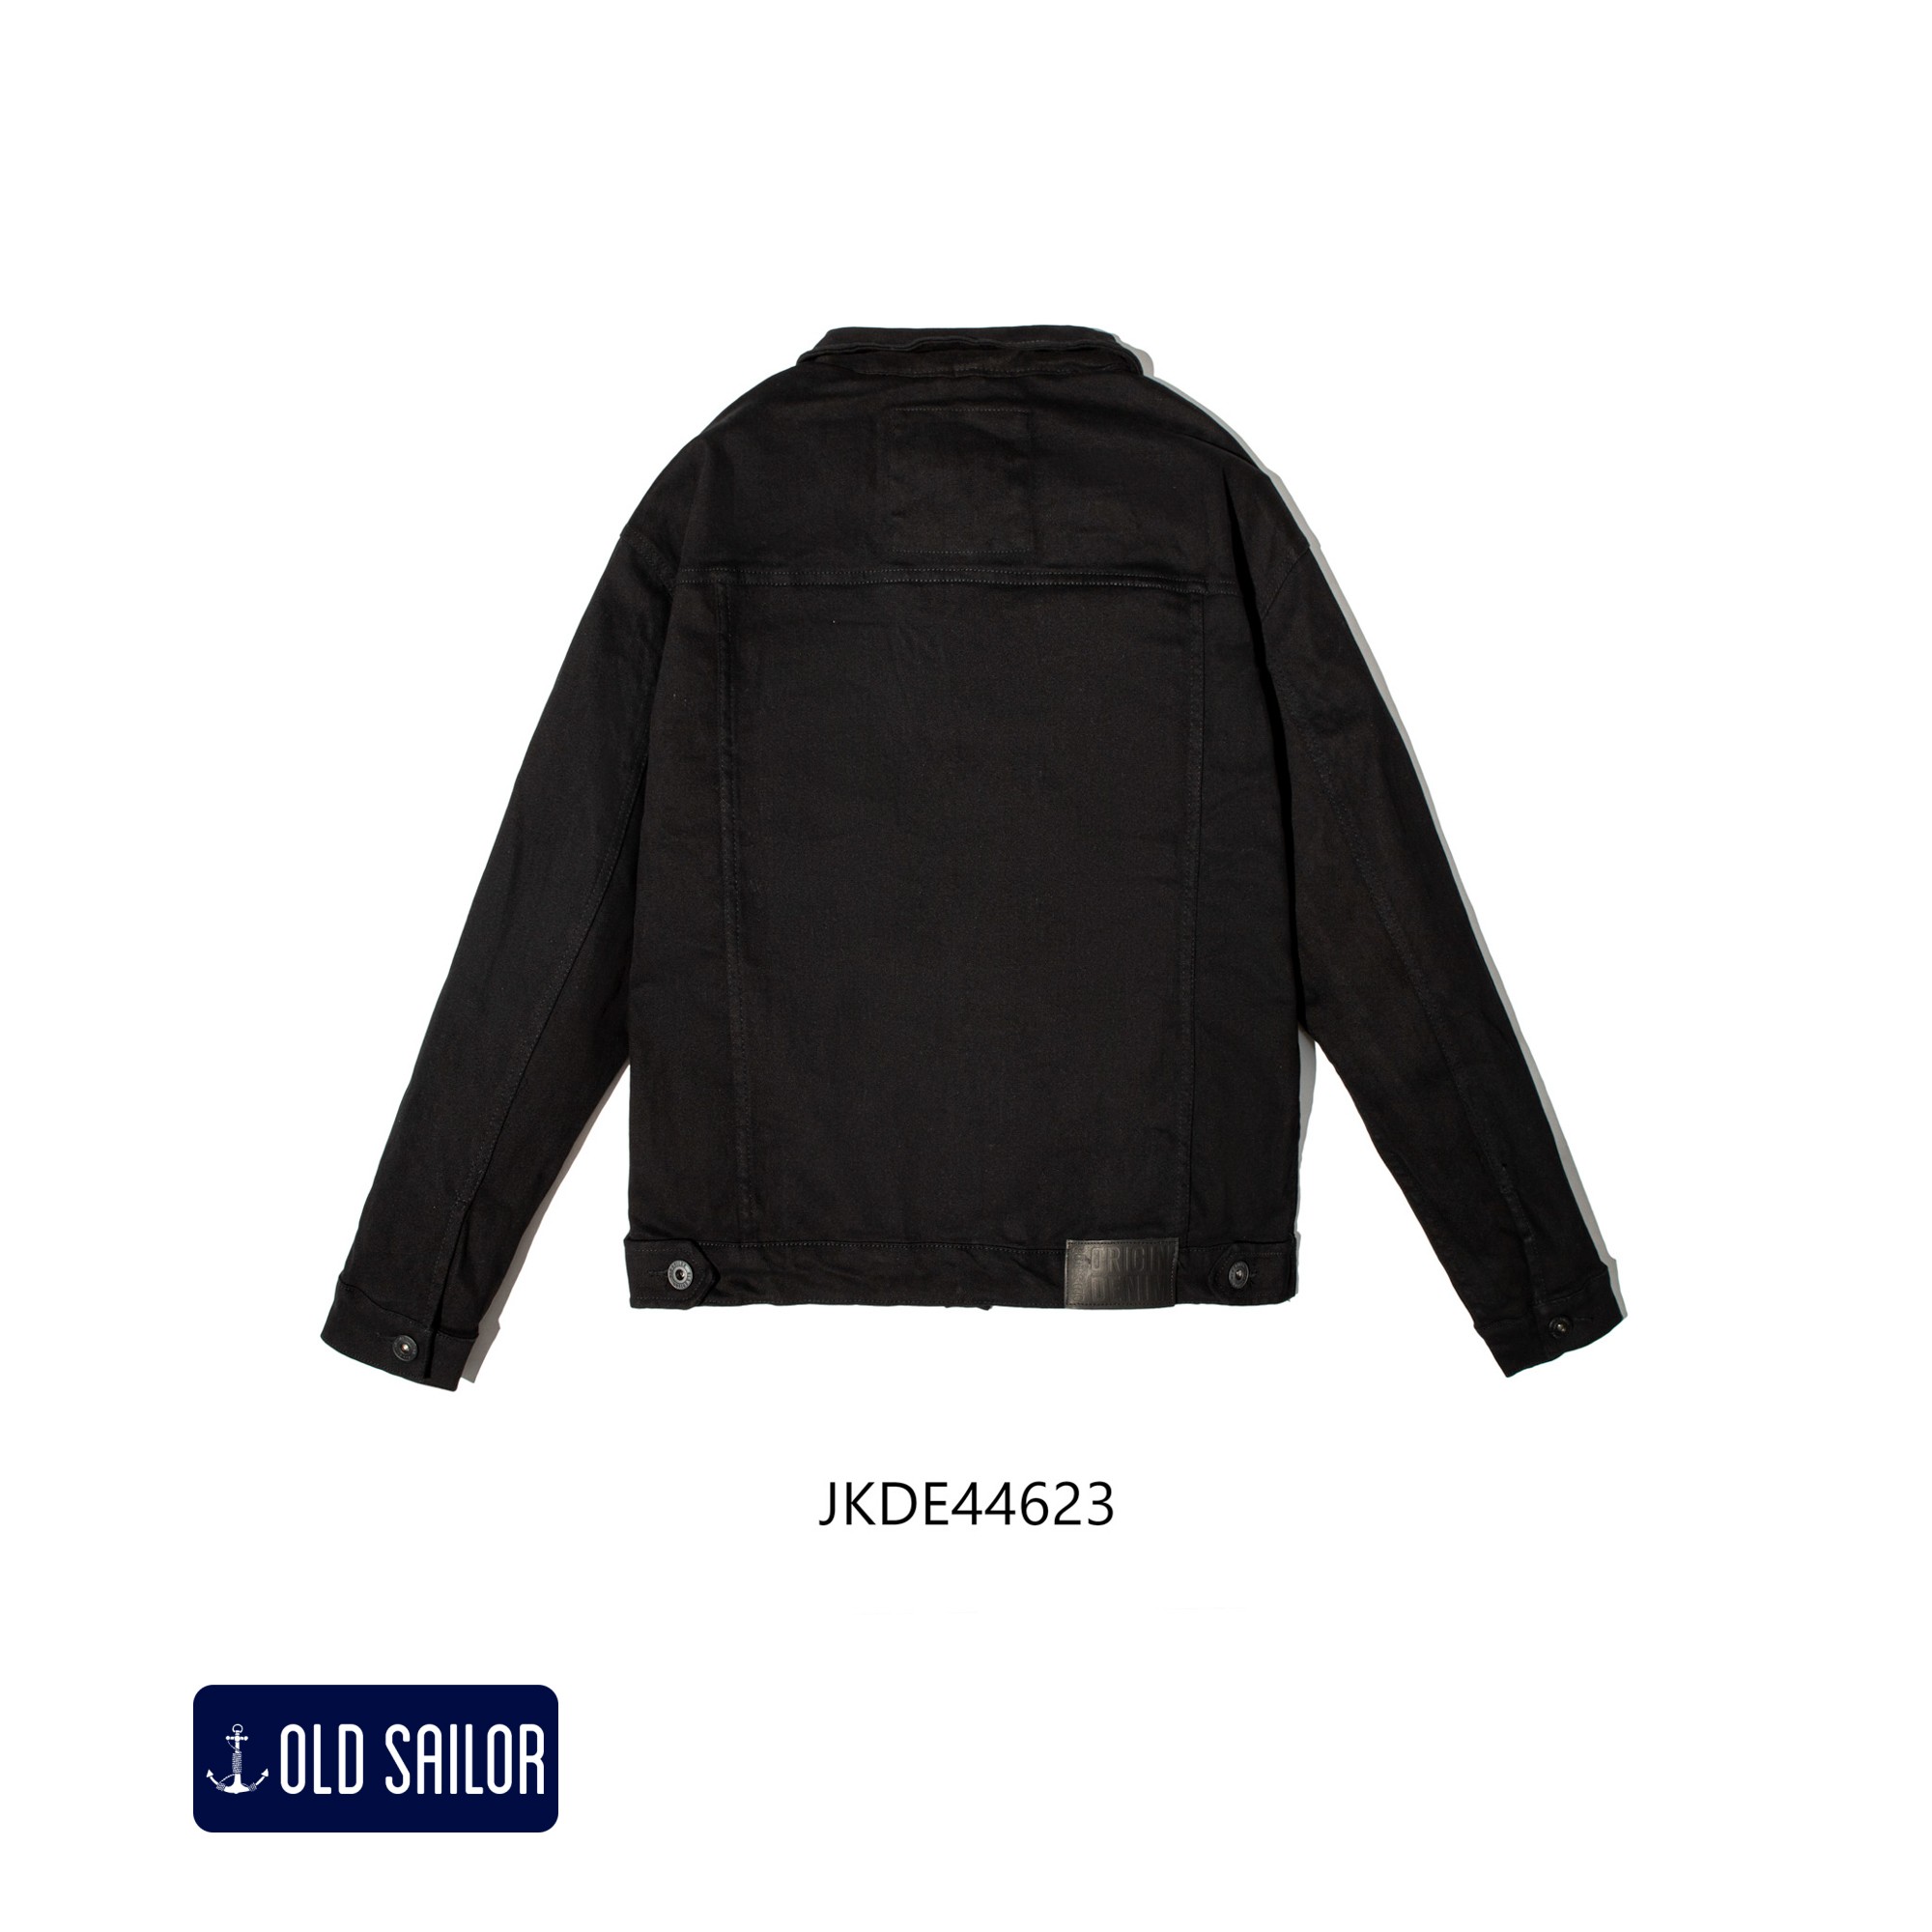 Áo khoác Jean Old Sailor  - O.S.L DENIM JACKET - RACH - BLACK - JKDE446231 - đen rách  big size upto 4XL